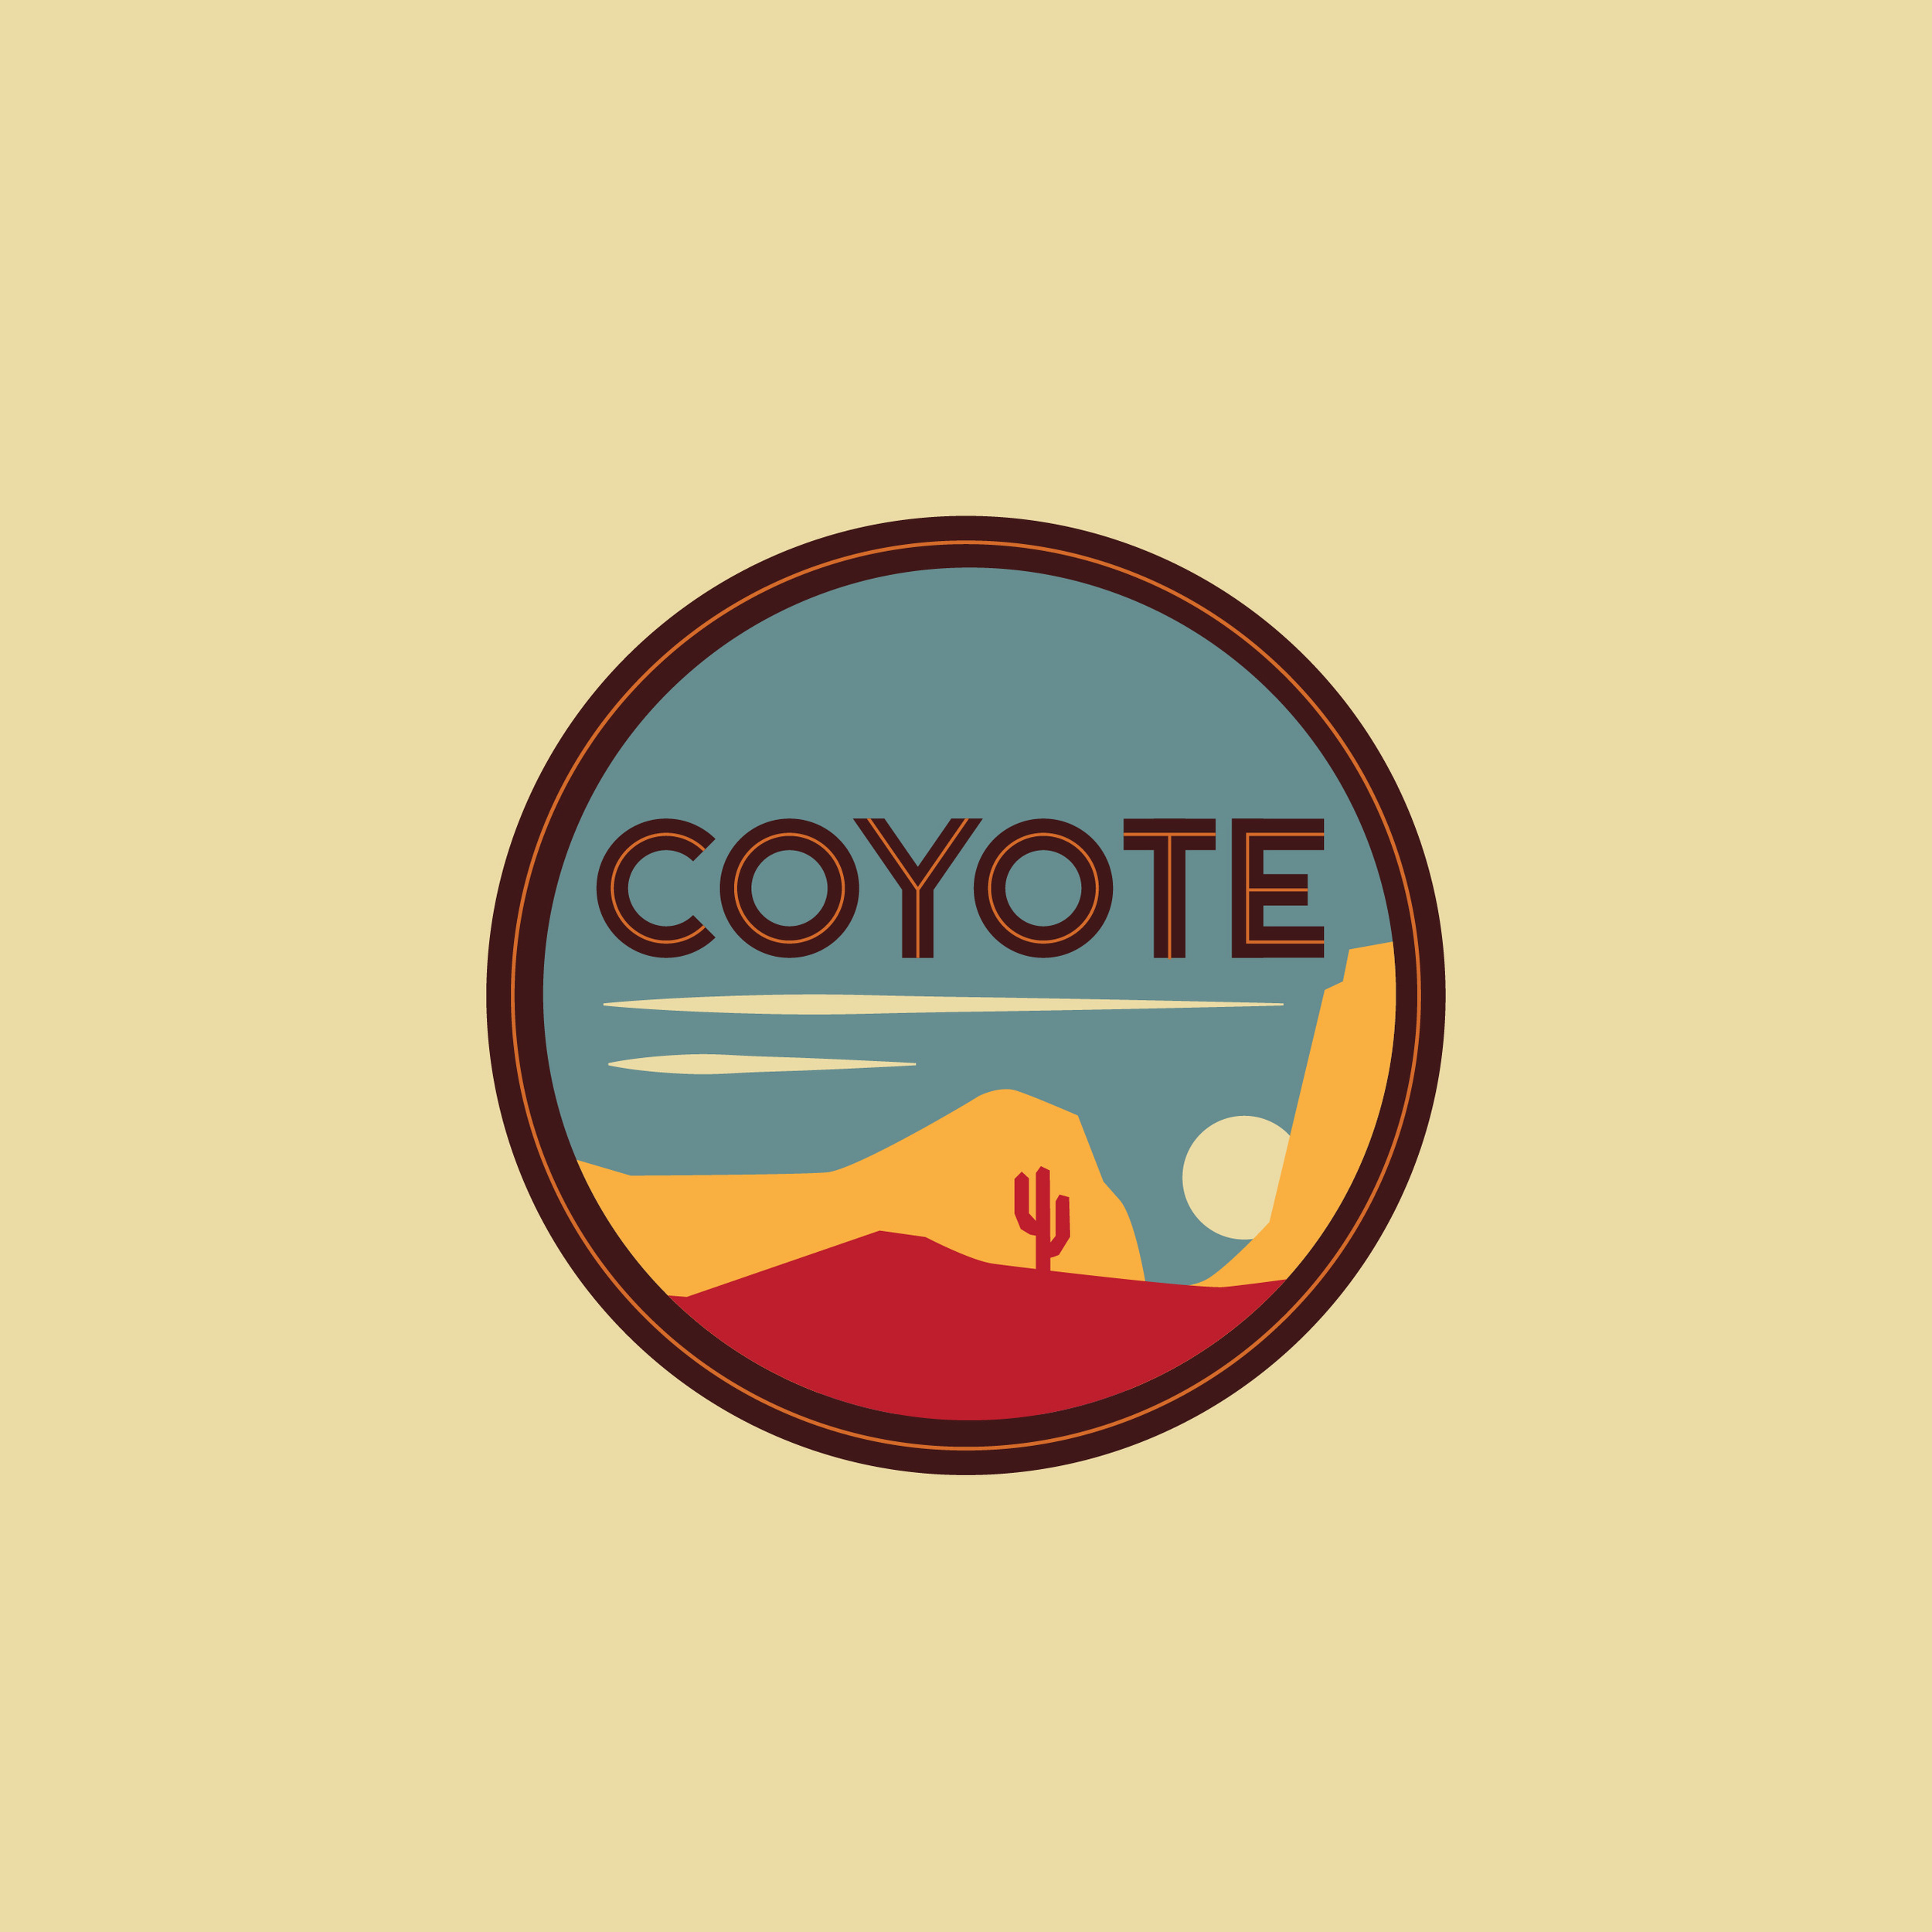 Coyote_Logos-03.jpg